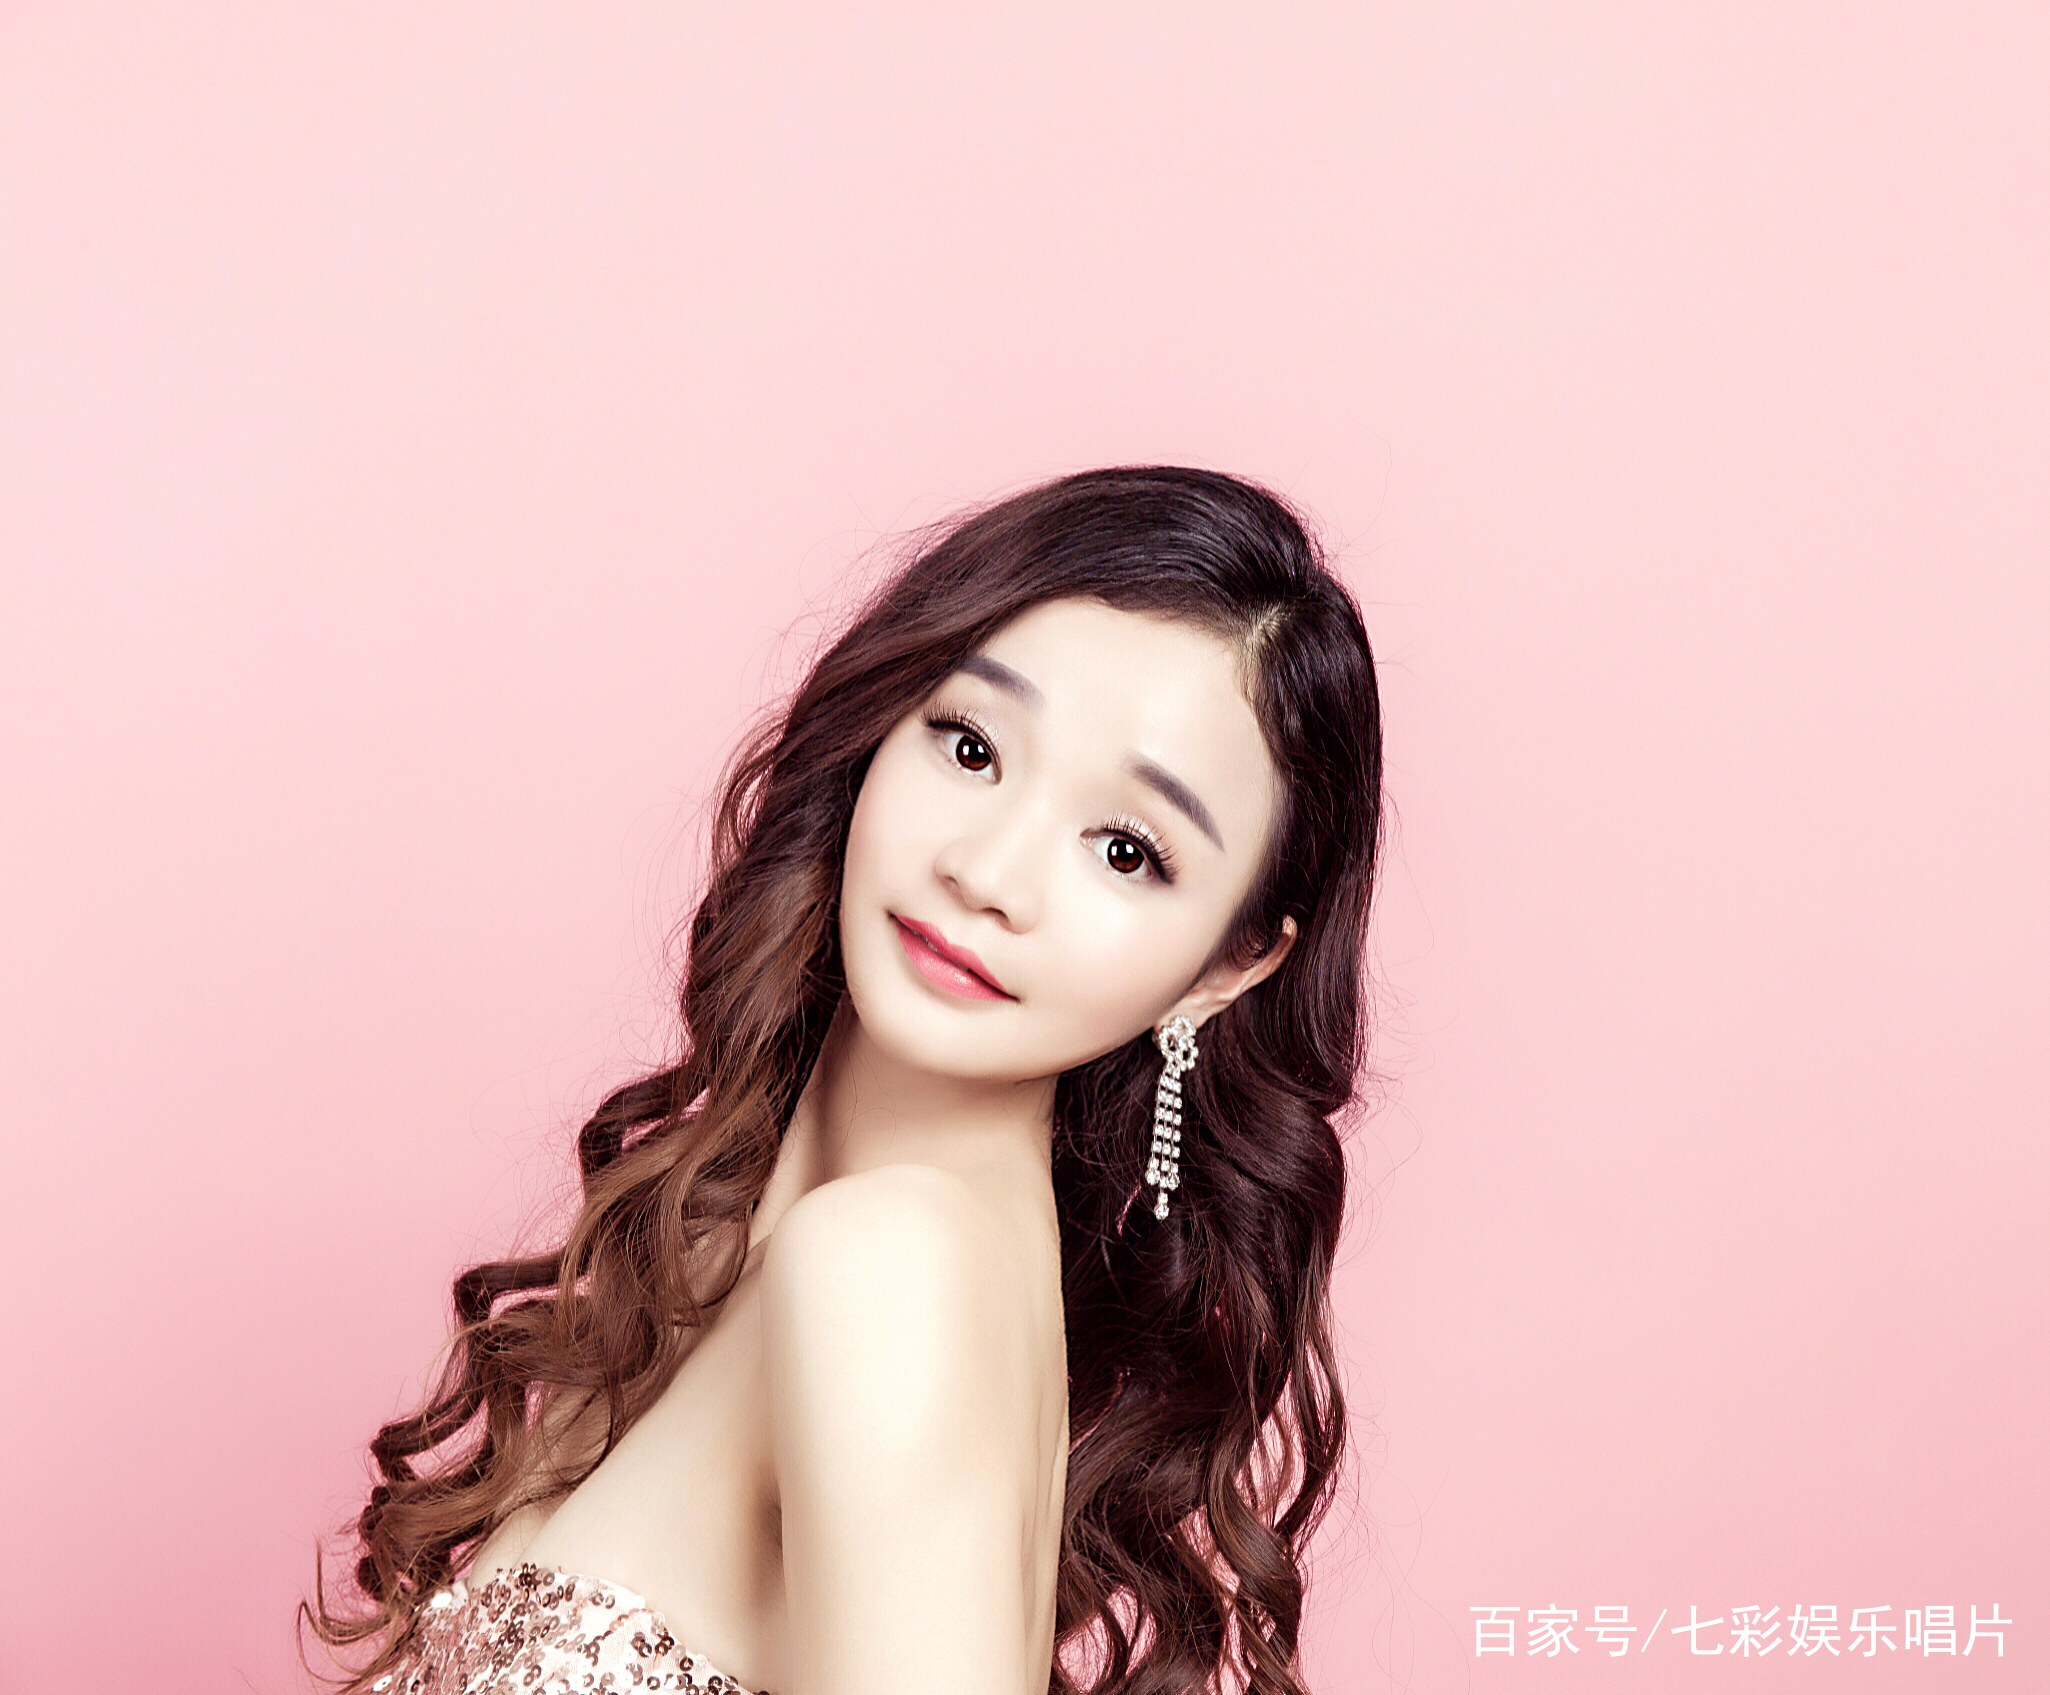 原创推荐:你不知道的华语乐坛实力派新声女歌手舒清